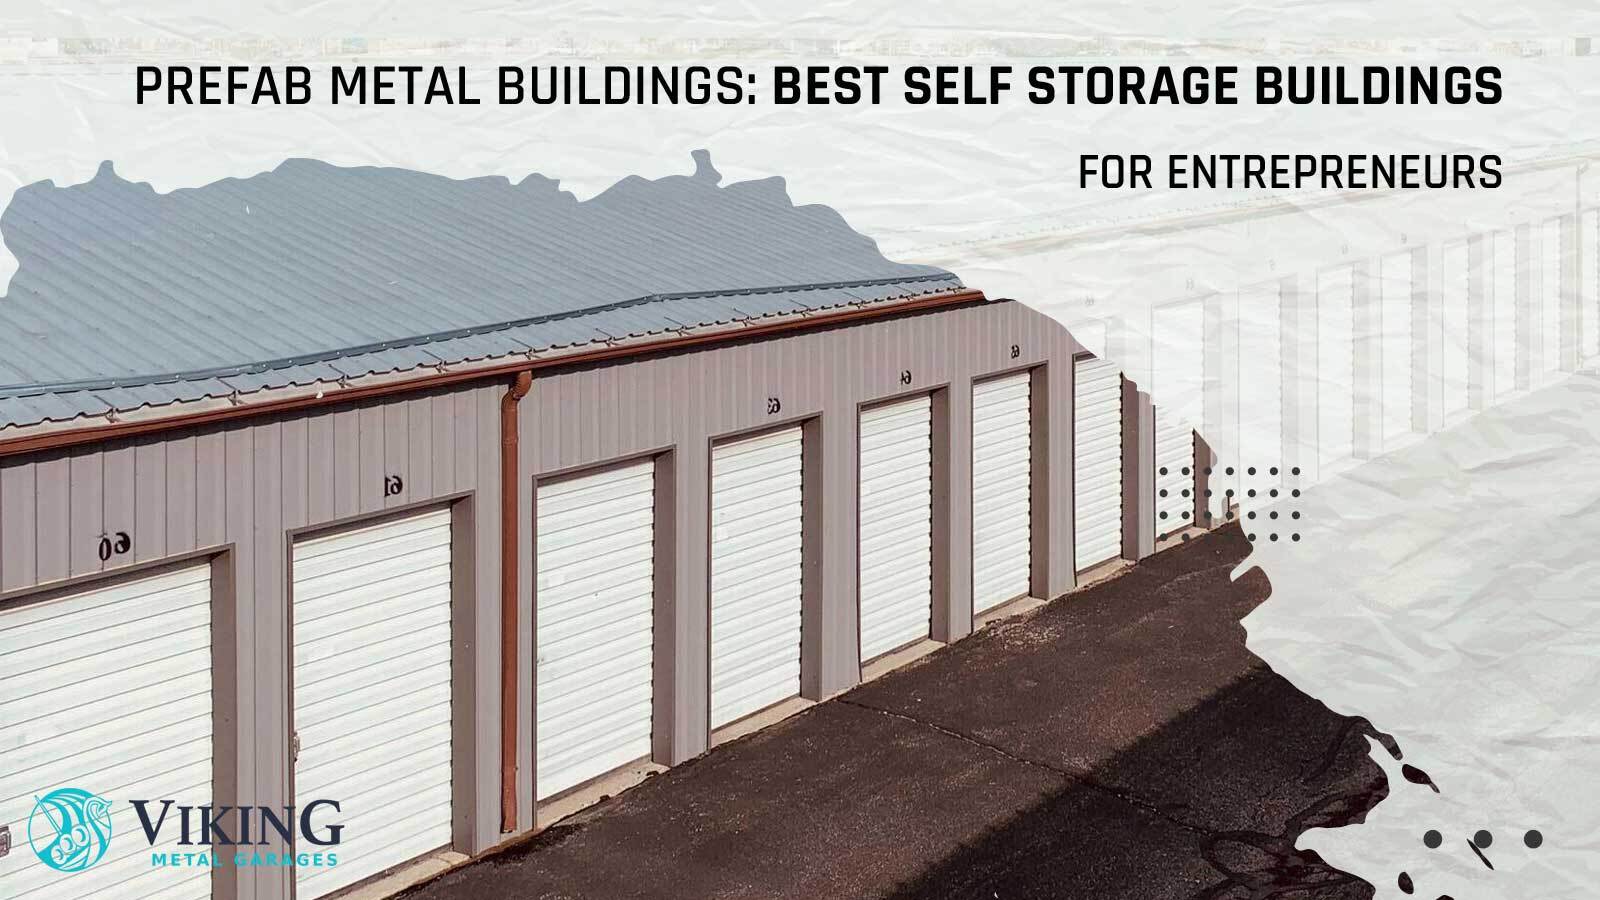 Prefab Metal Buildings: Best Self Storage Buildings for Entrepreneurs